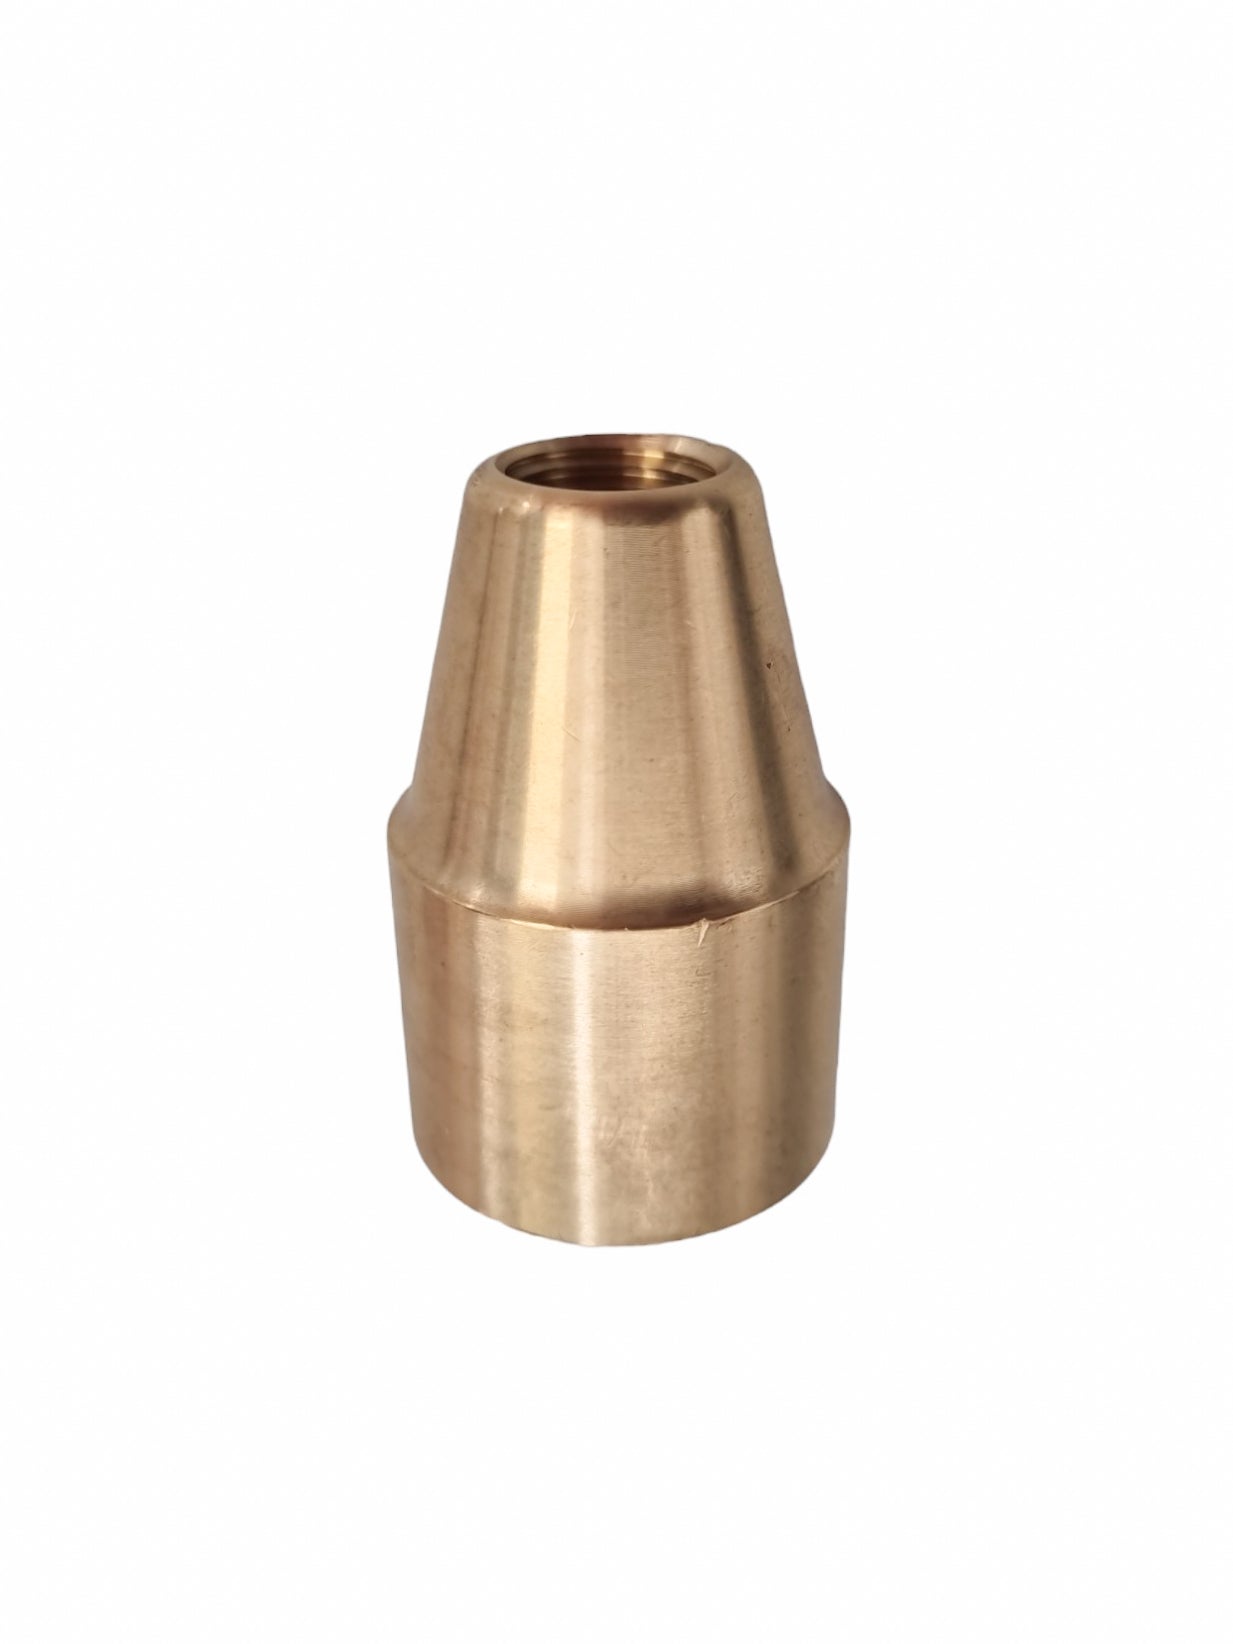 Kopie van 710.710.105 Oertzen Brass nozzle holder EX-models